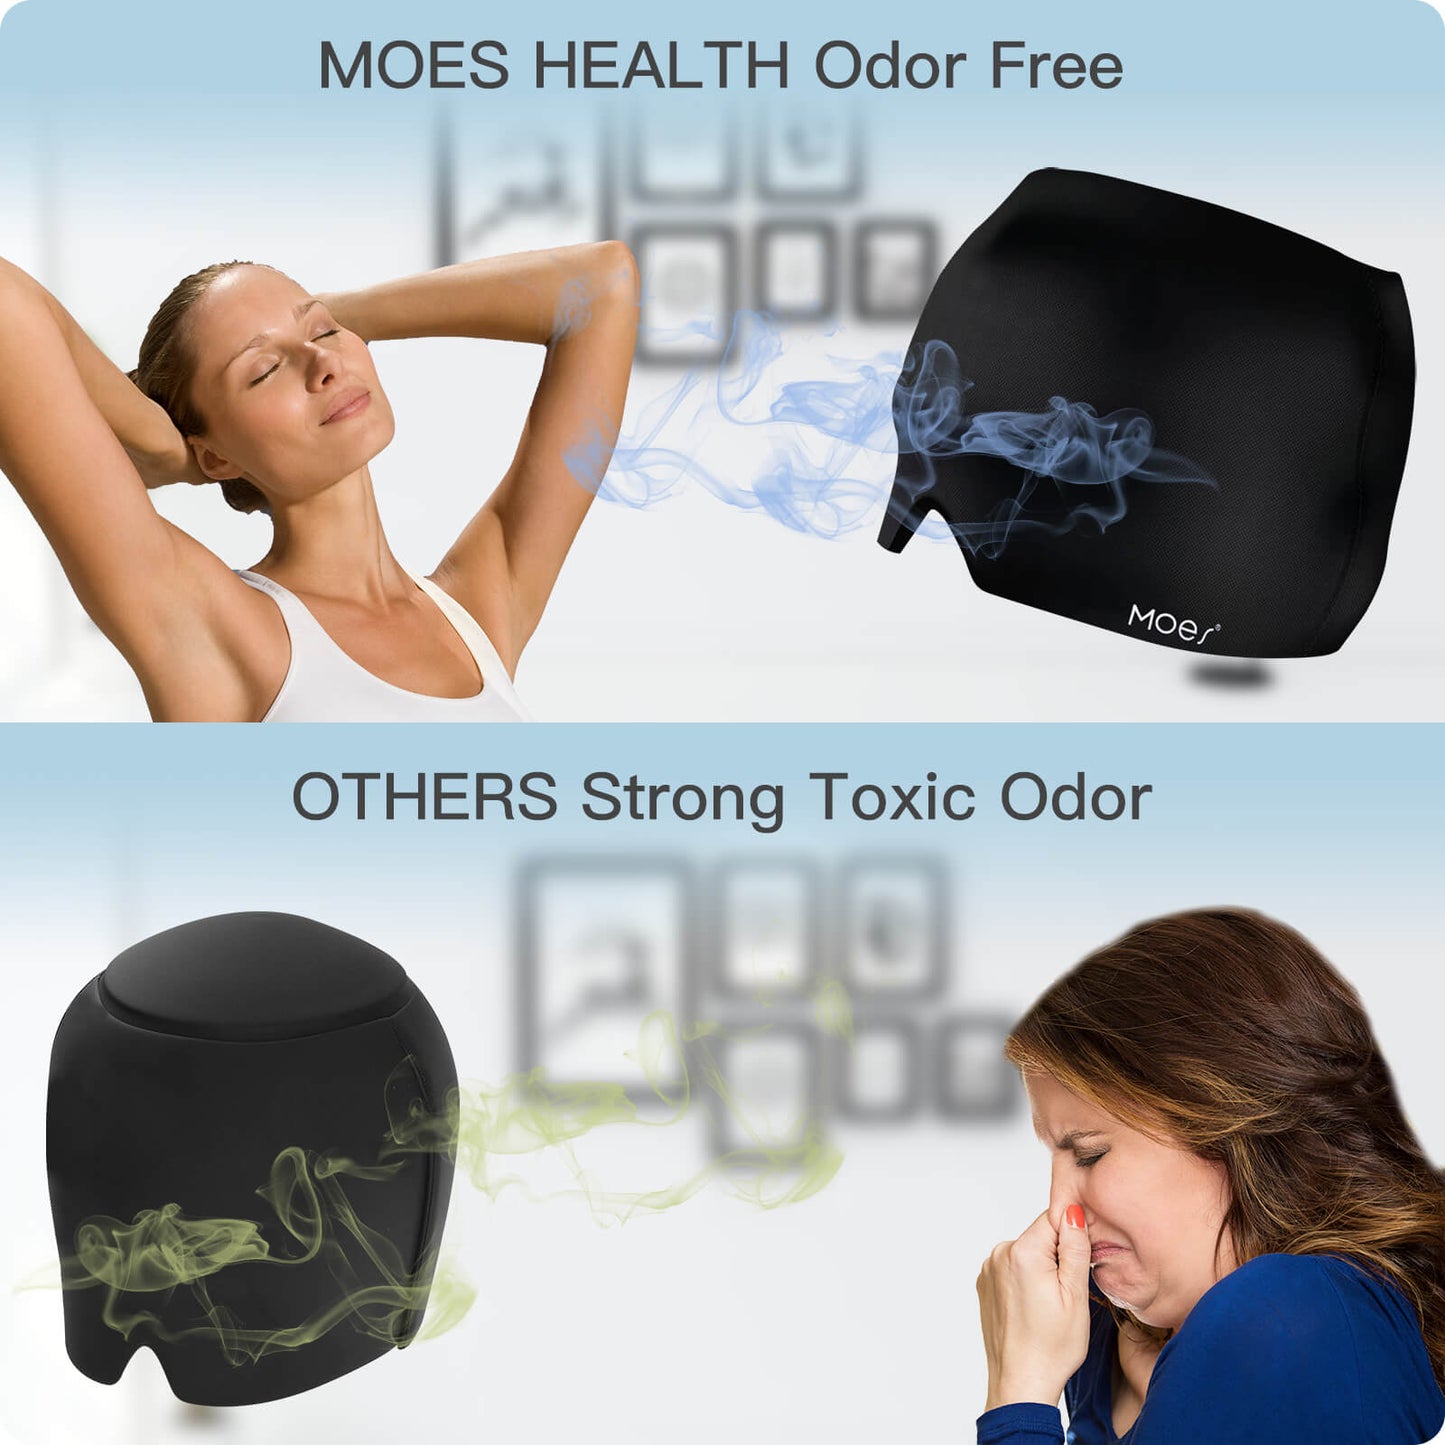 MOES HEALTH Odor Free - MOES